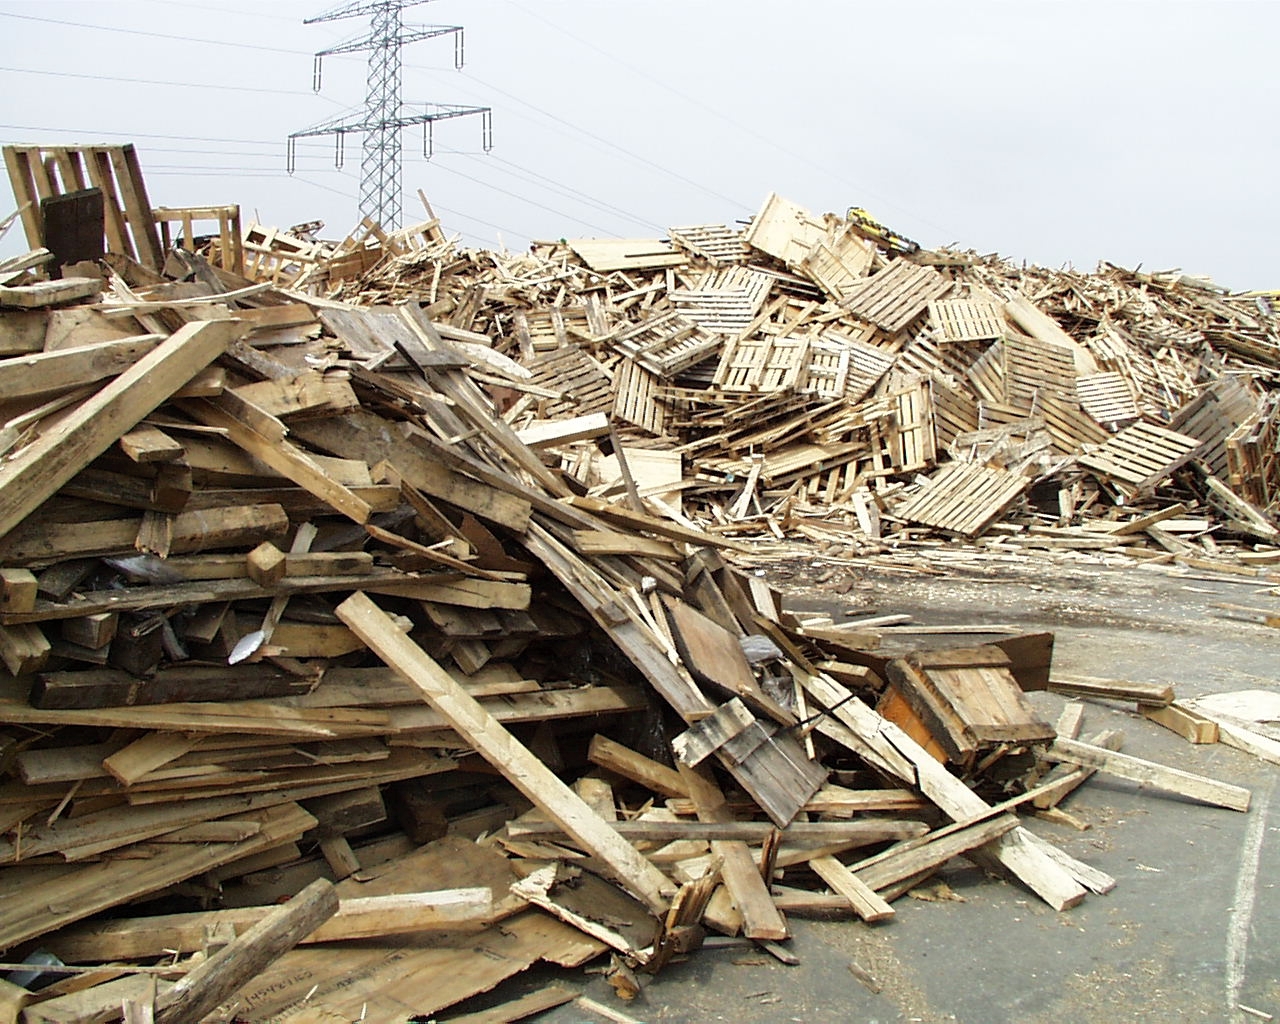 Das Foto zeigt große Haufen mit alten Holzlatten, Holzpaletten und weiteren Holzerzeugnissen auf einem Recyclinghof.